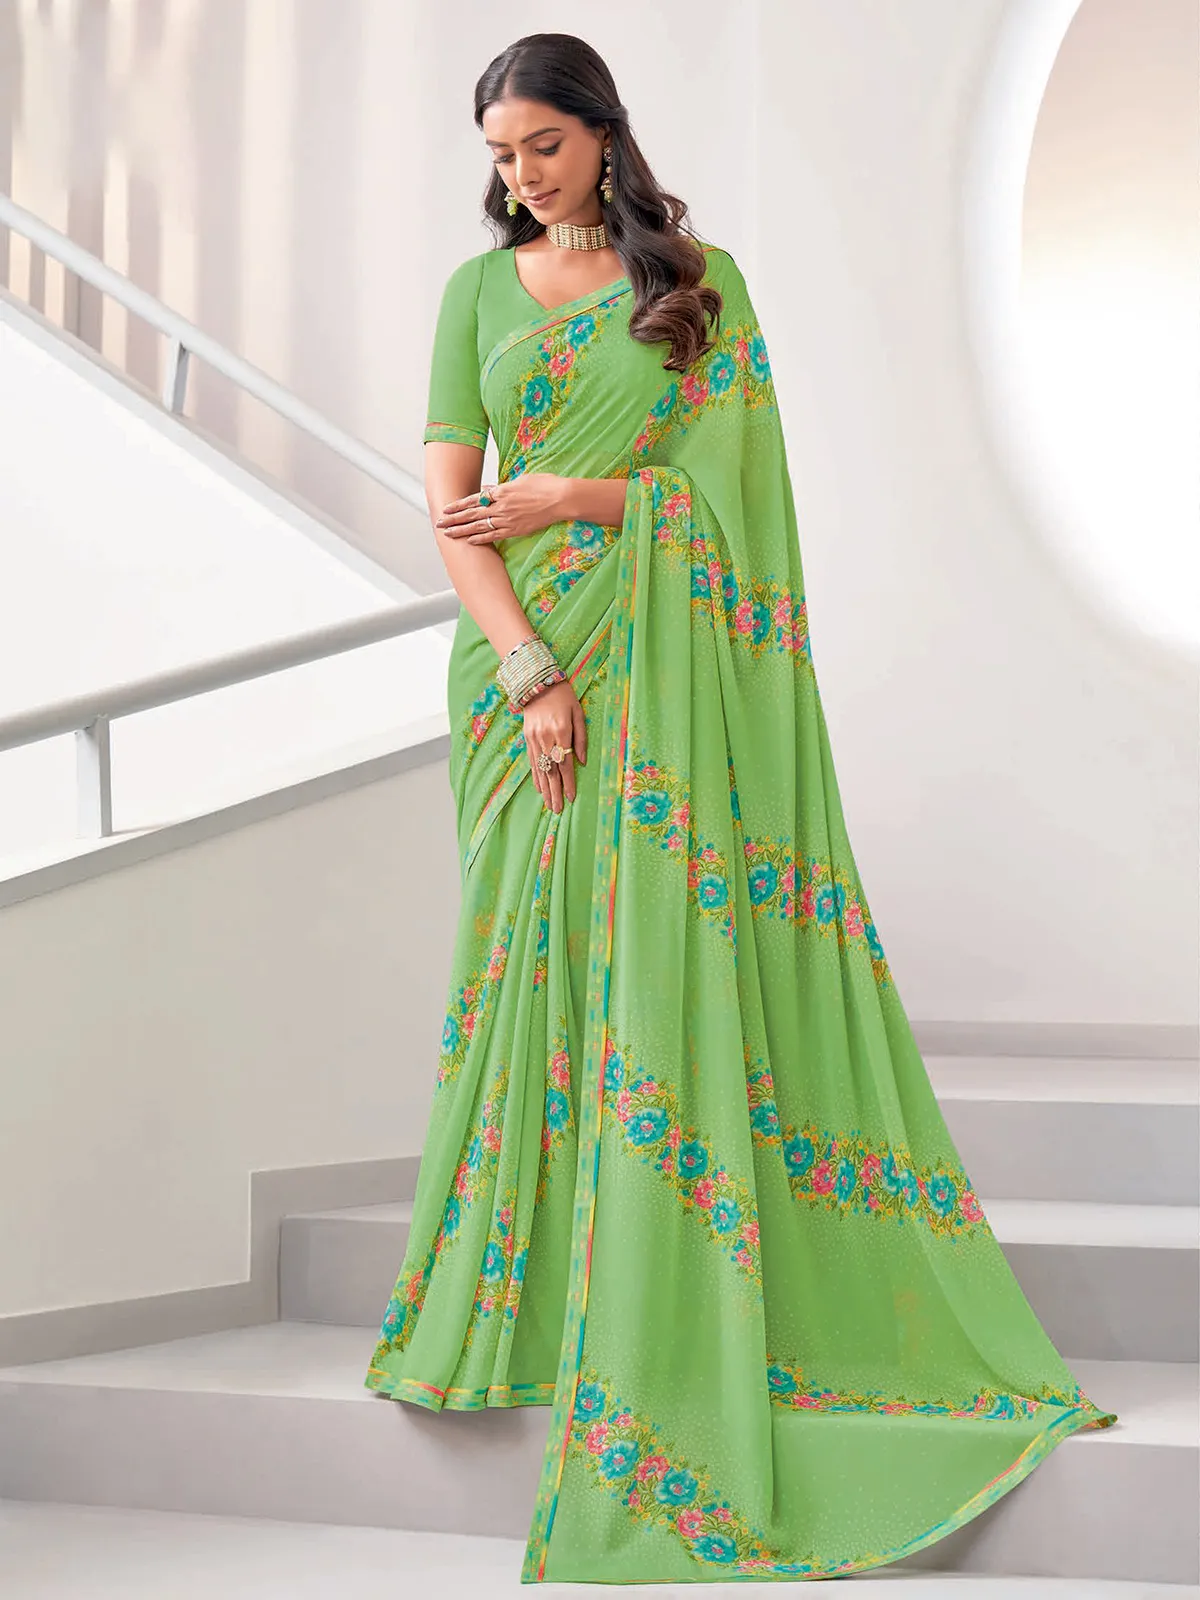 Stunning light green floral printed saree